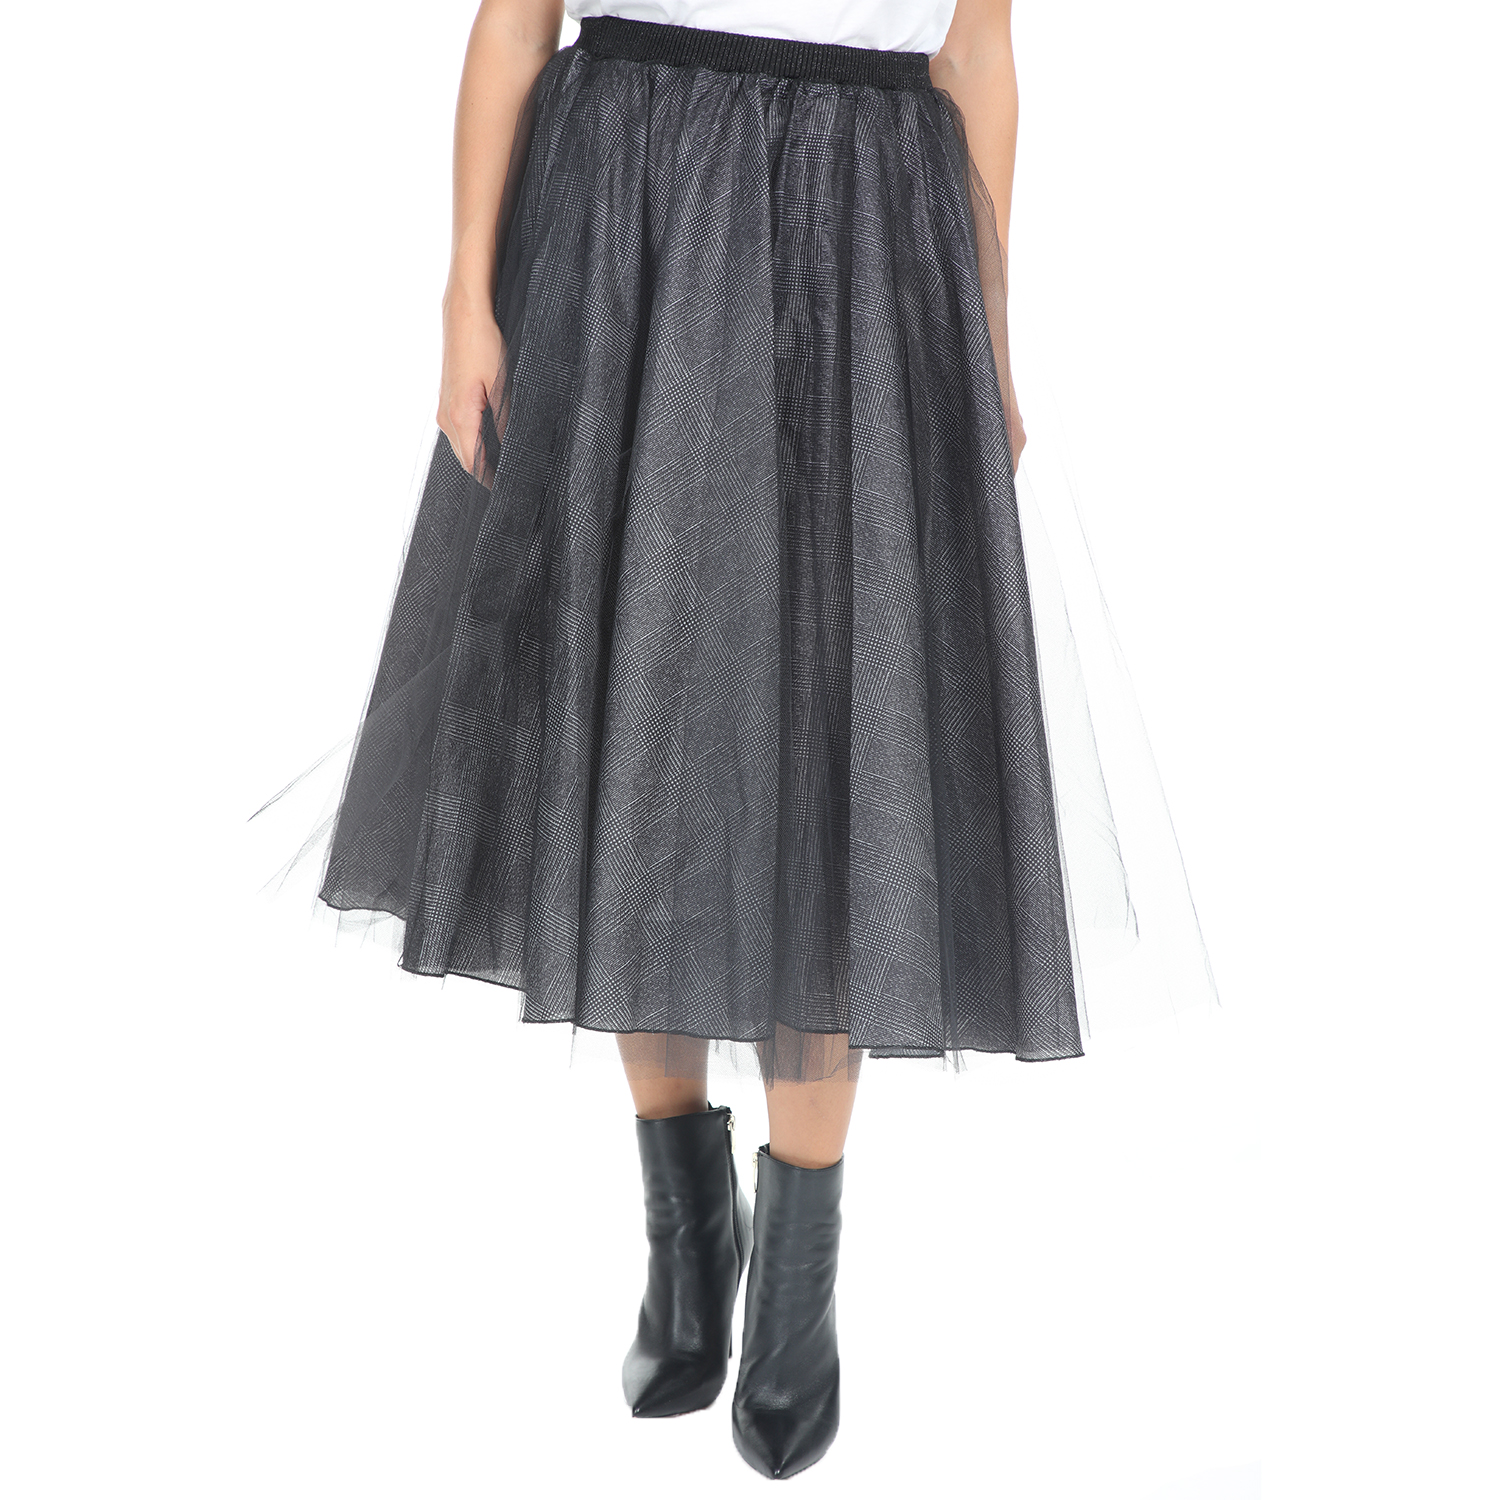 Γυναικεία/Ρούχα/Φούστες/Μέχρι το γόνατο IMPERIAL - Γυναικεία midi φούστα IMPERIAL μαύρη